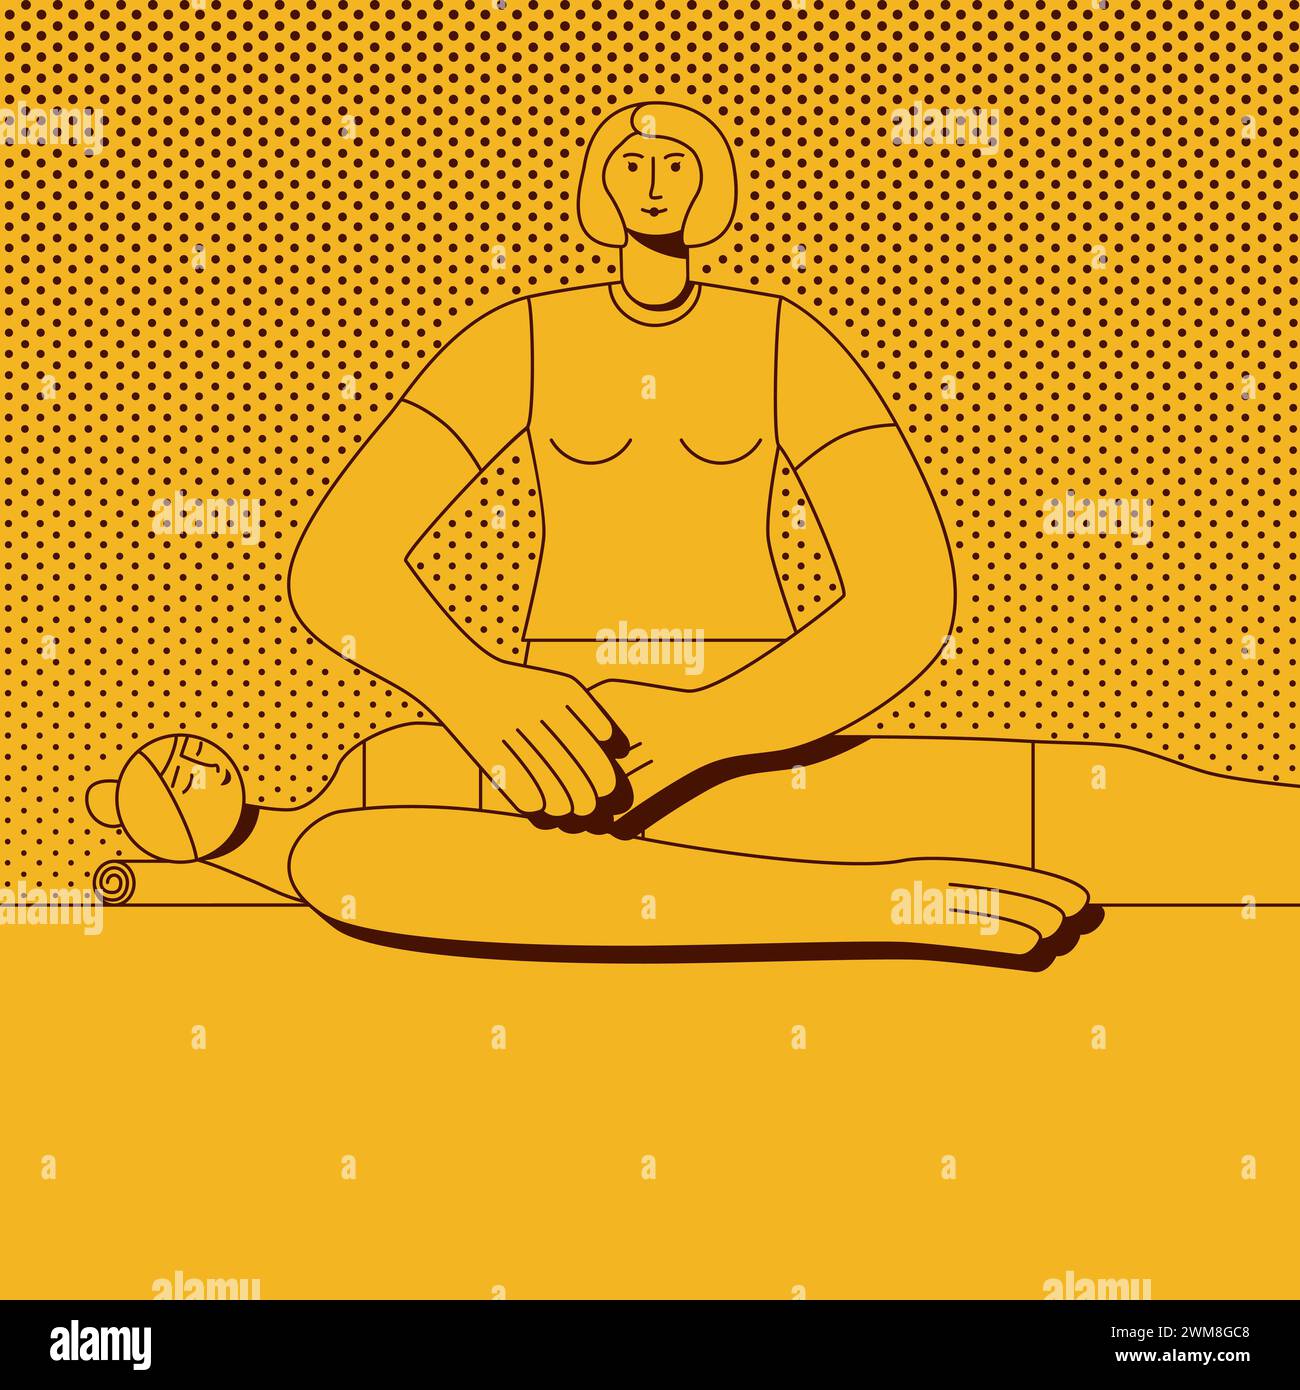 Massaggio addominale effettuato da un terapista professionista nella spa. Illustrazione vettoriale isolata in stile retrò. Illustrazione Vettoriale